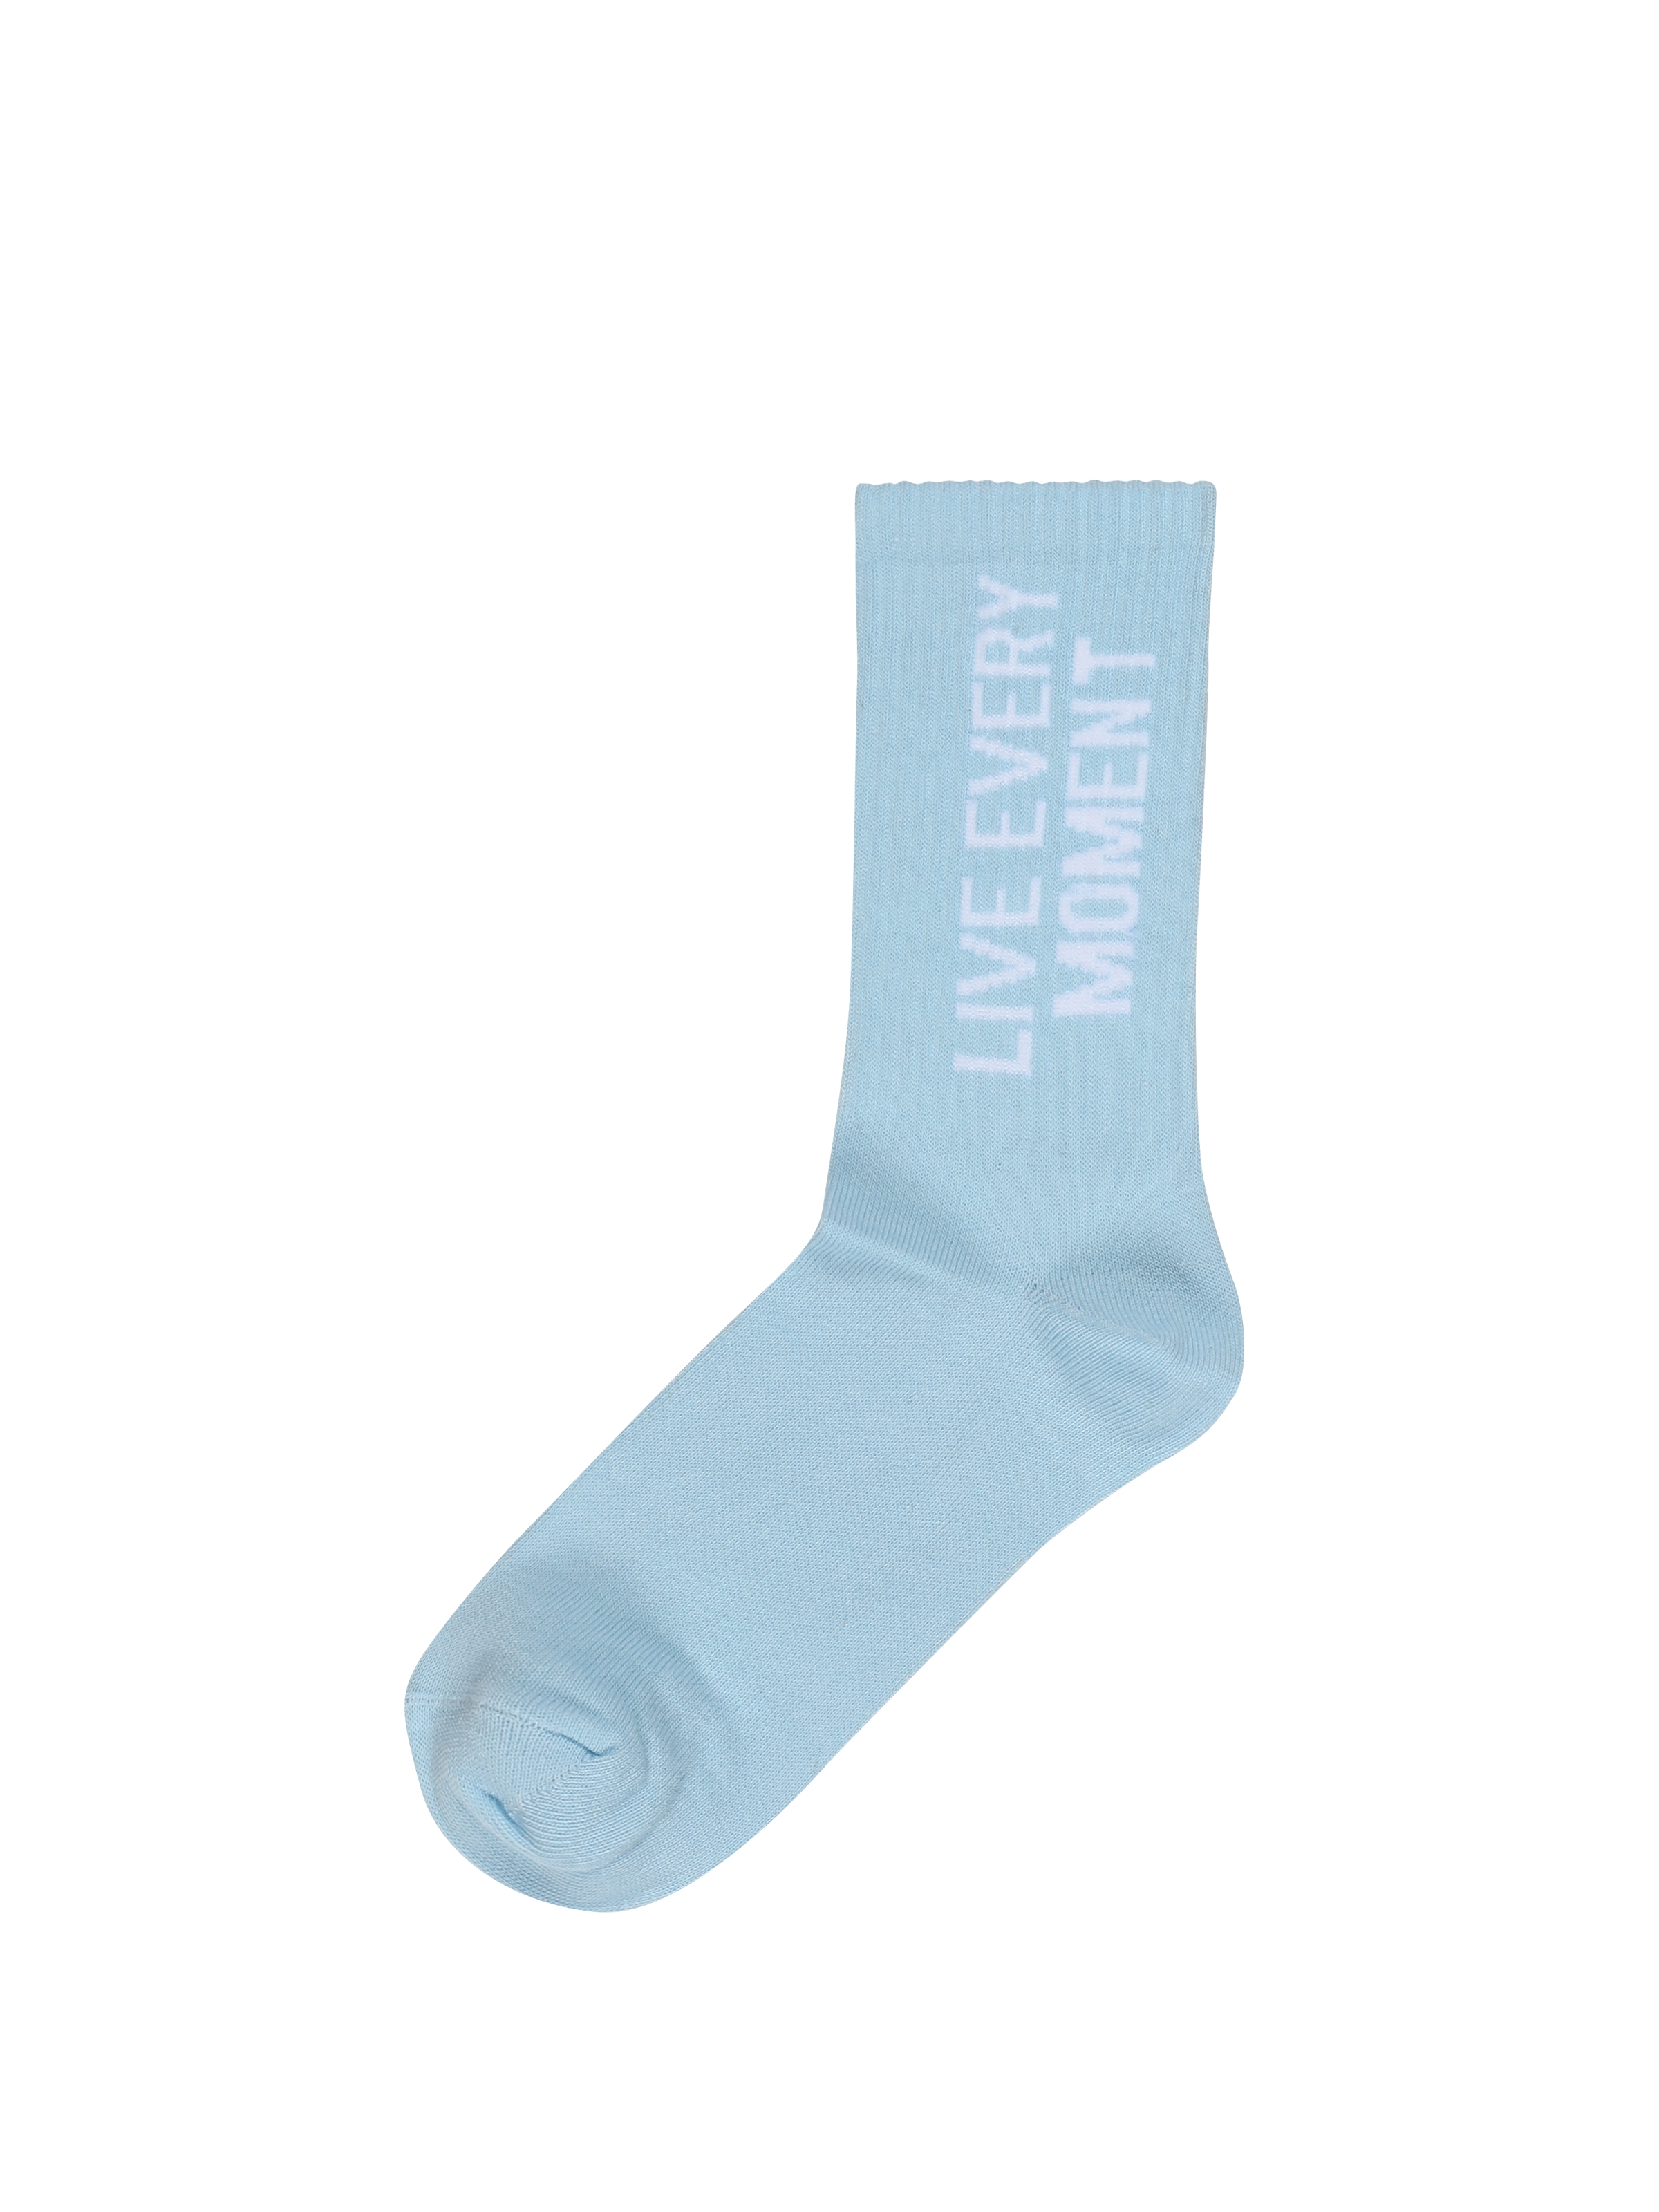 Показати інформацію про Шкарпетки Жіночі Блакитні З Принтом Cl1062085